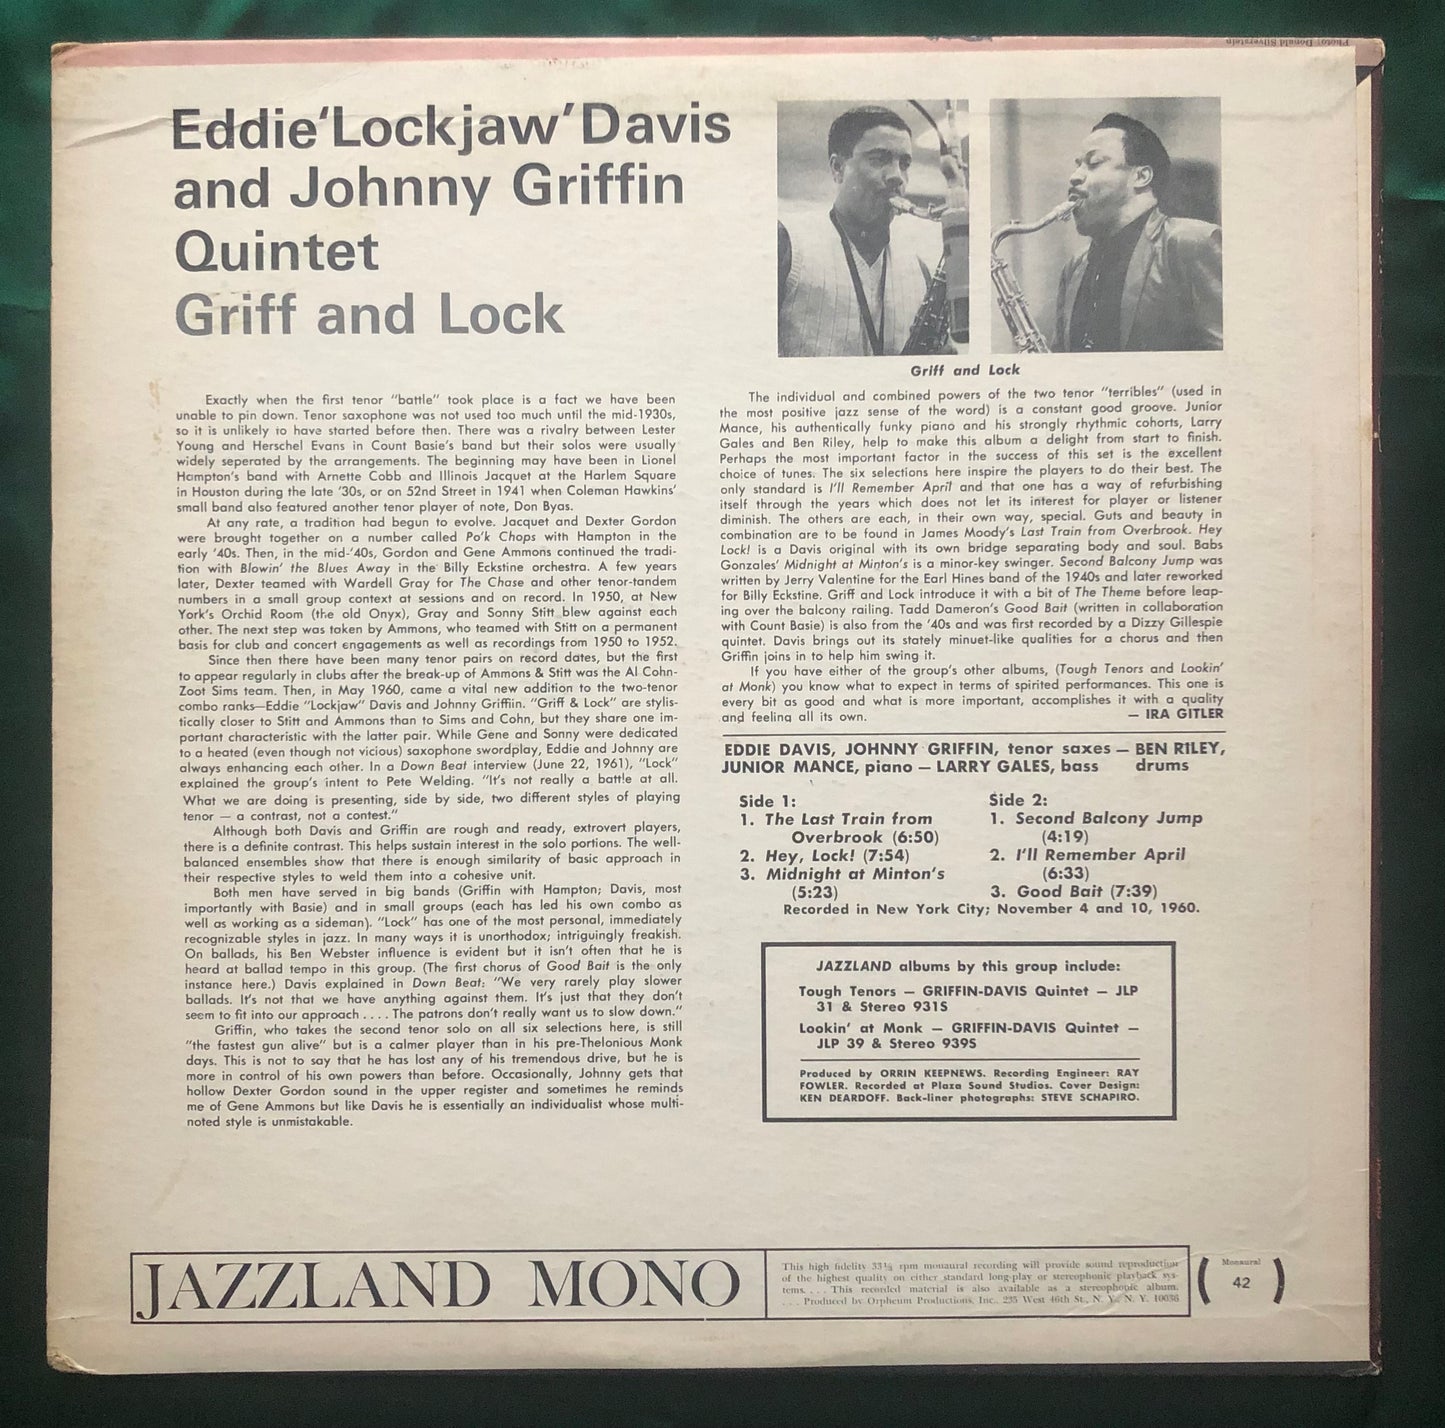 Eddie "Lockjaw" Davis & Johnny Griffin Quartet - Griff & Lock 1960's Jazzland Mono